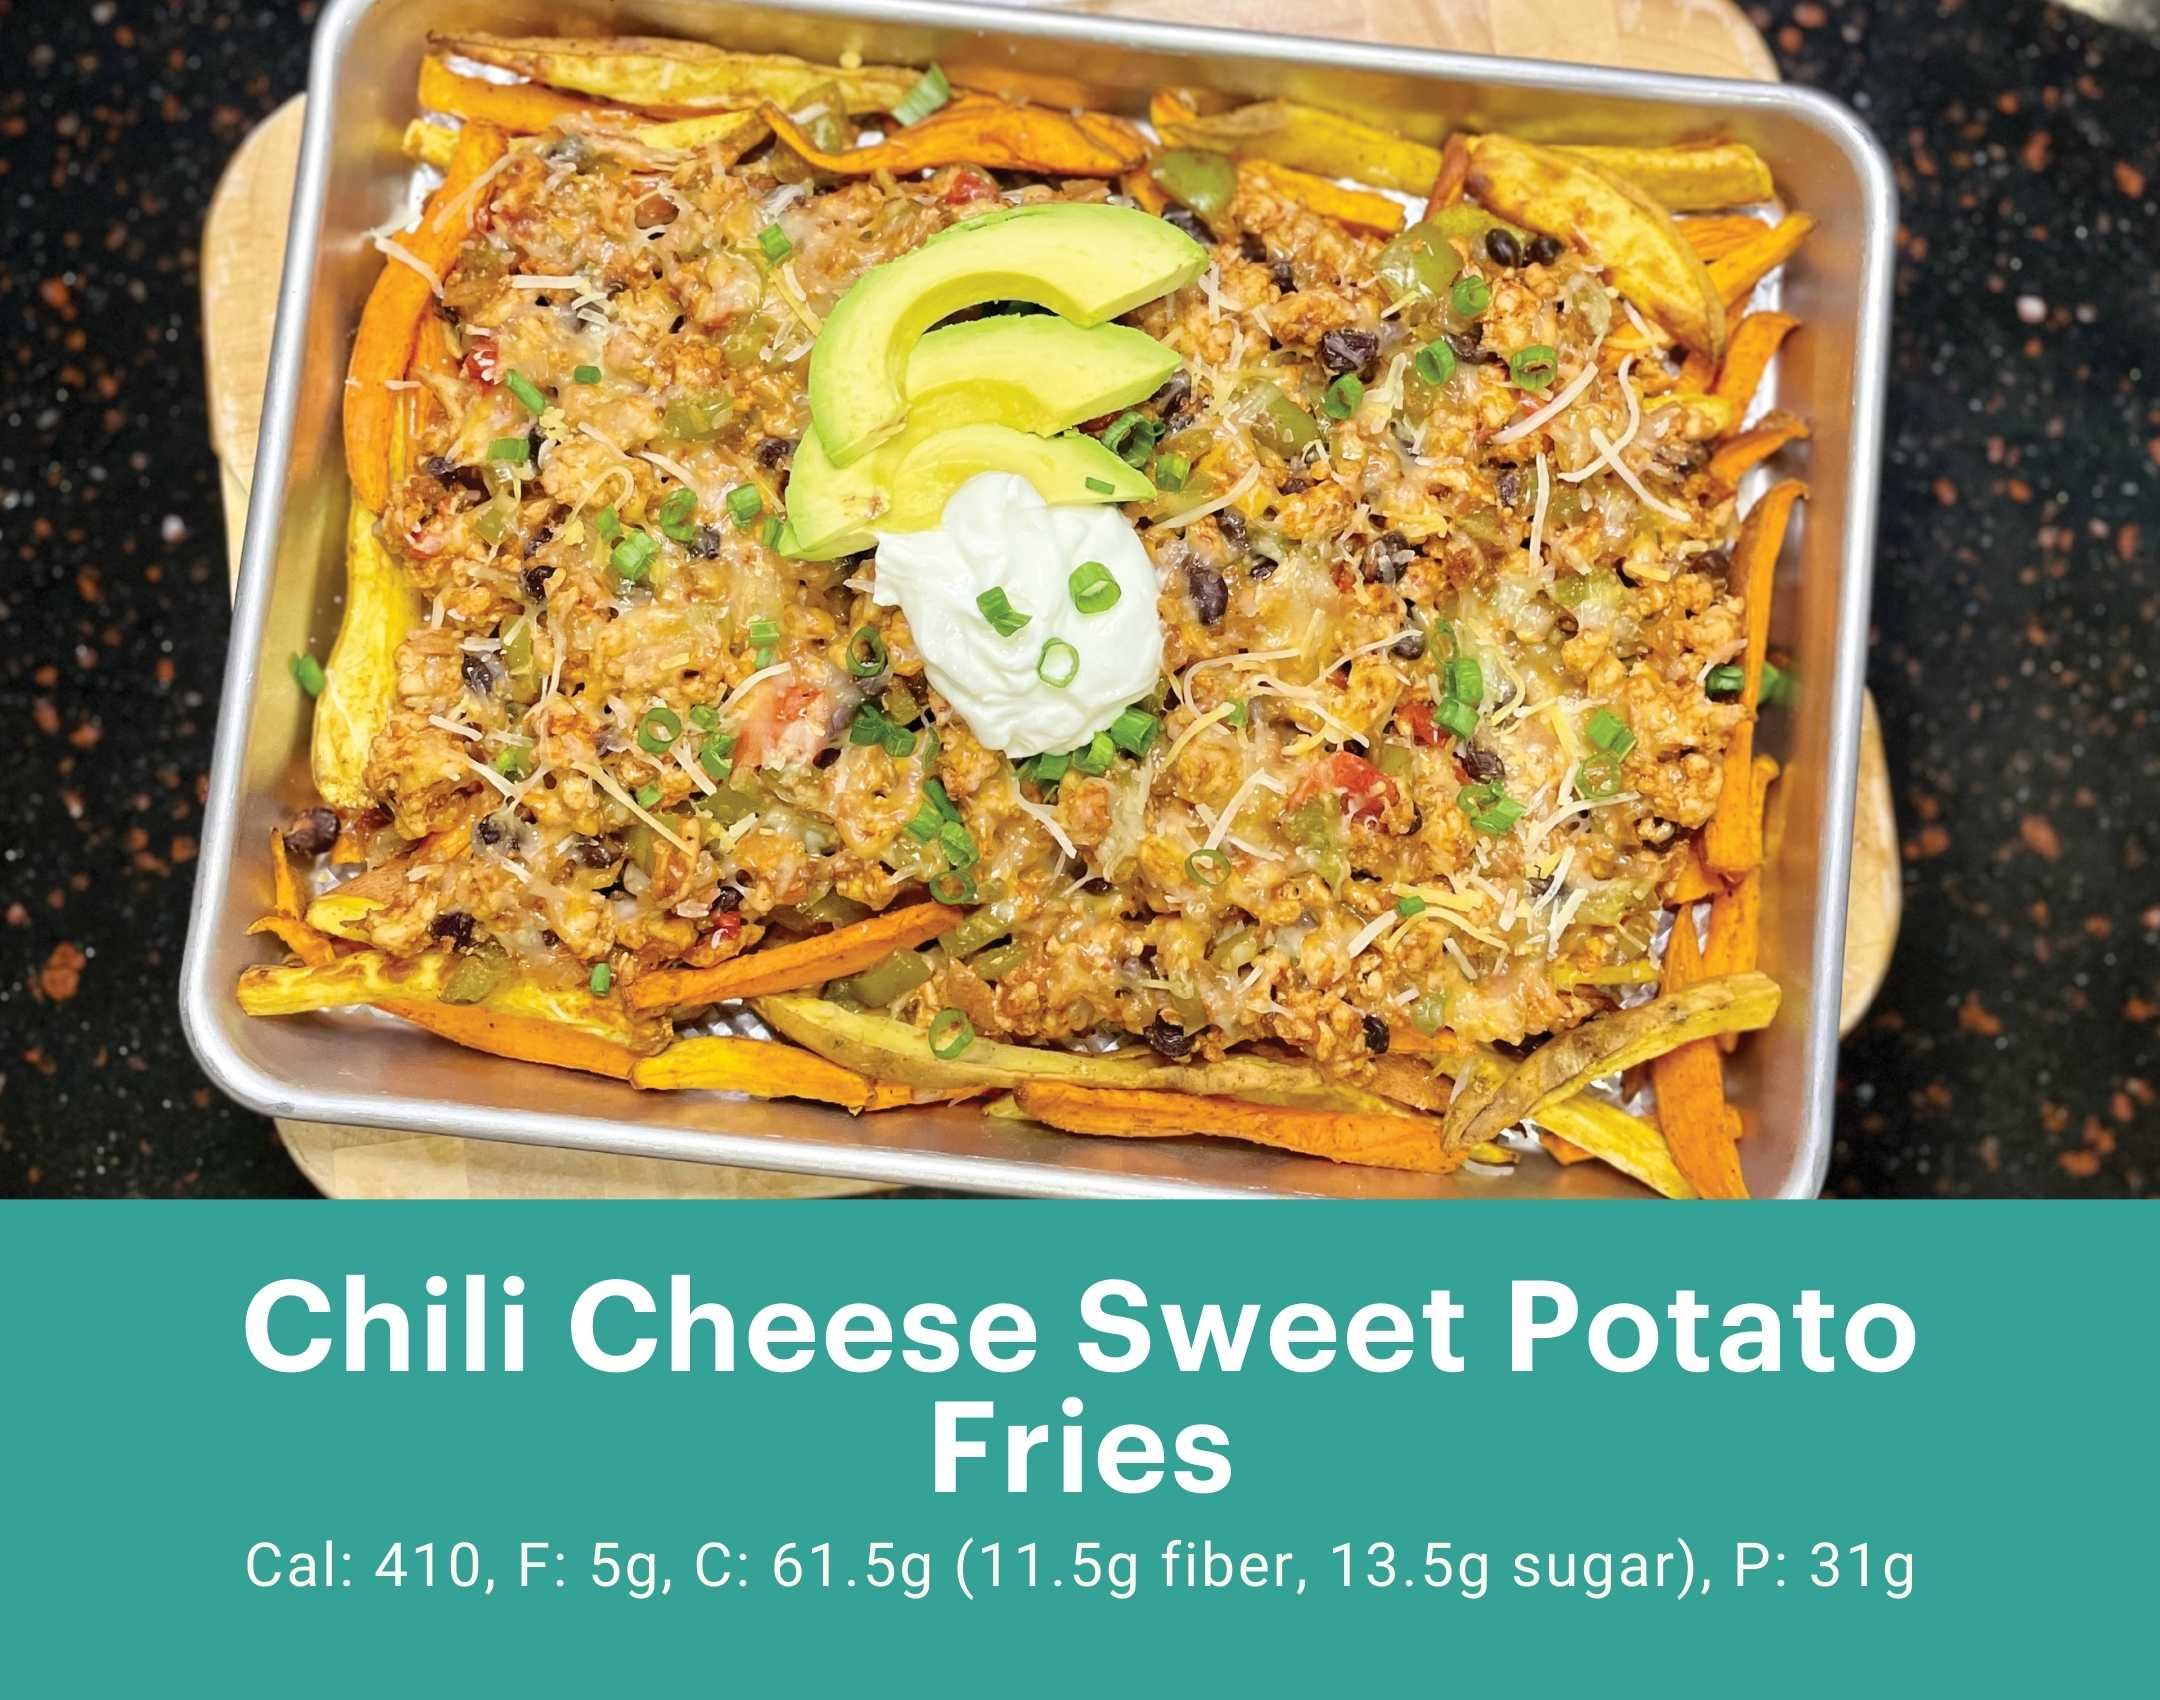 Chili Cheese Sweet Potato Fries.jpg